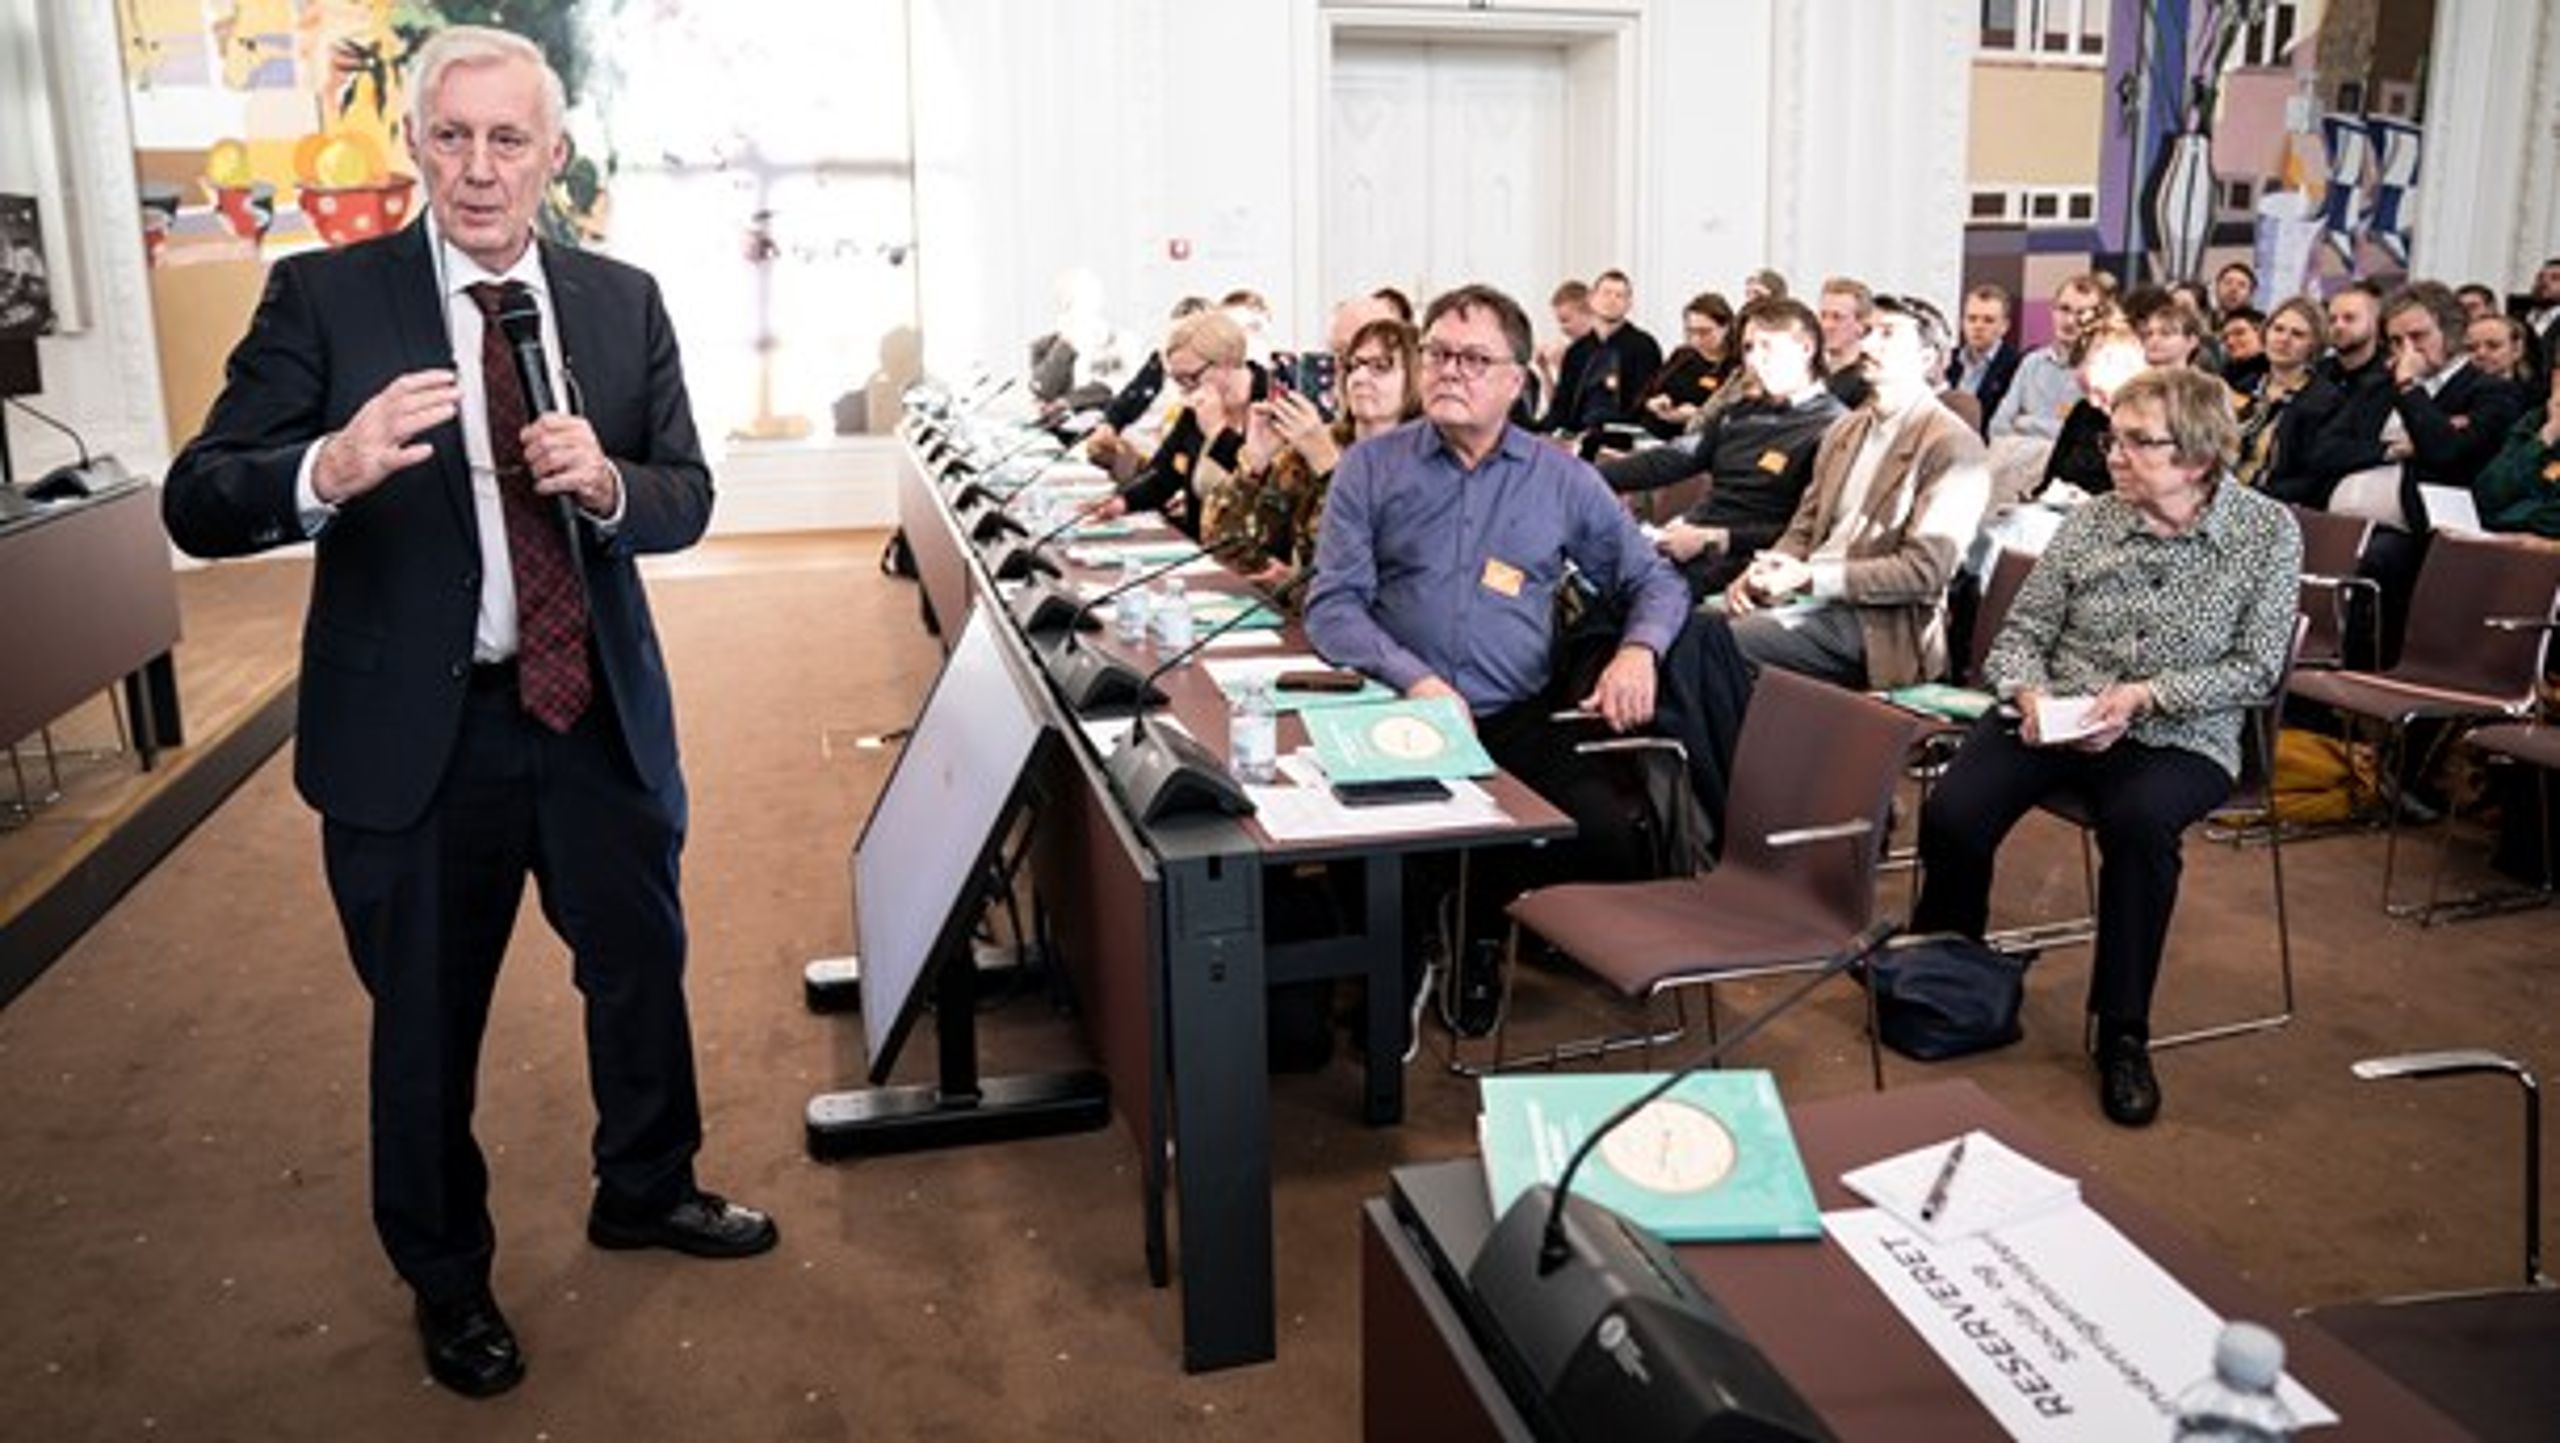 Formand for folketinget Henrik Dam Kristensen (S) debaterer efter Demokratikommissionen har præsenteret deres betænkning i Landstingssalen på Christiansborg, onsdag den 22. januar 2020.&nbsp;